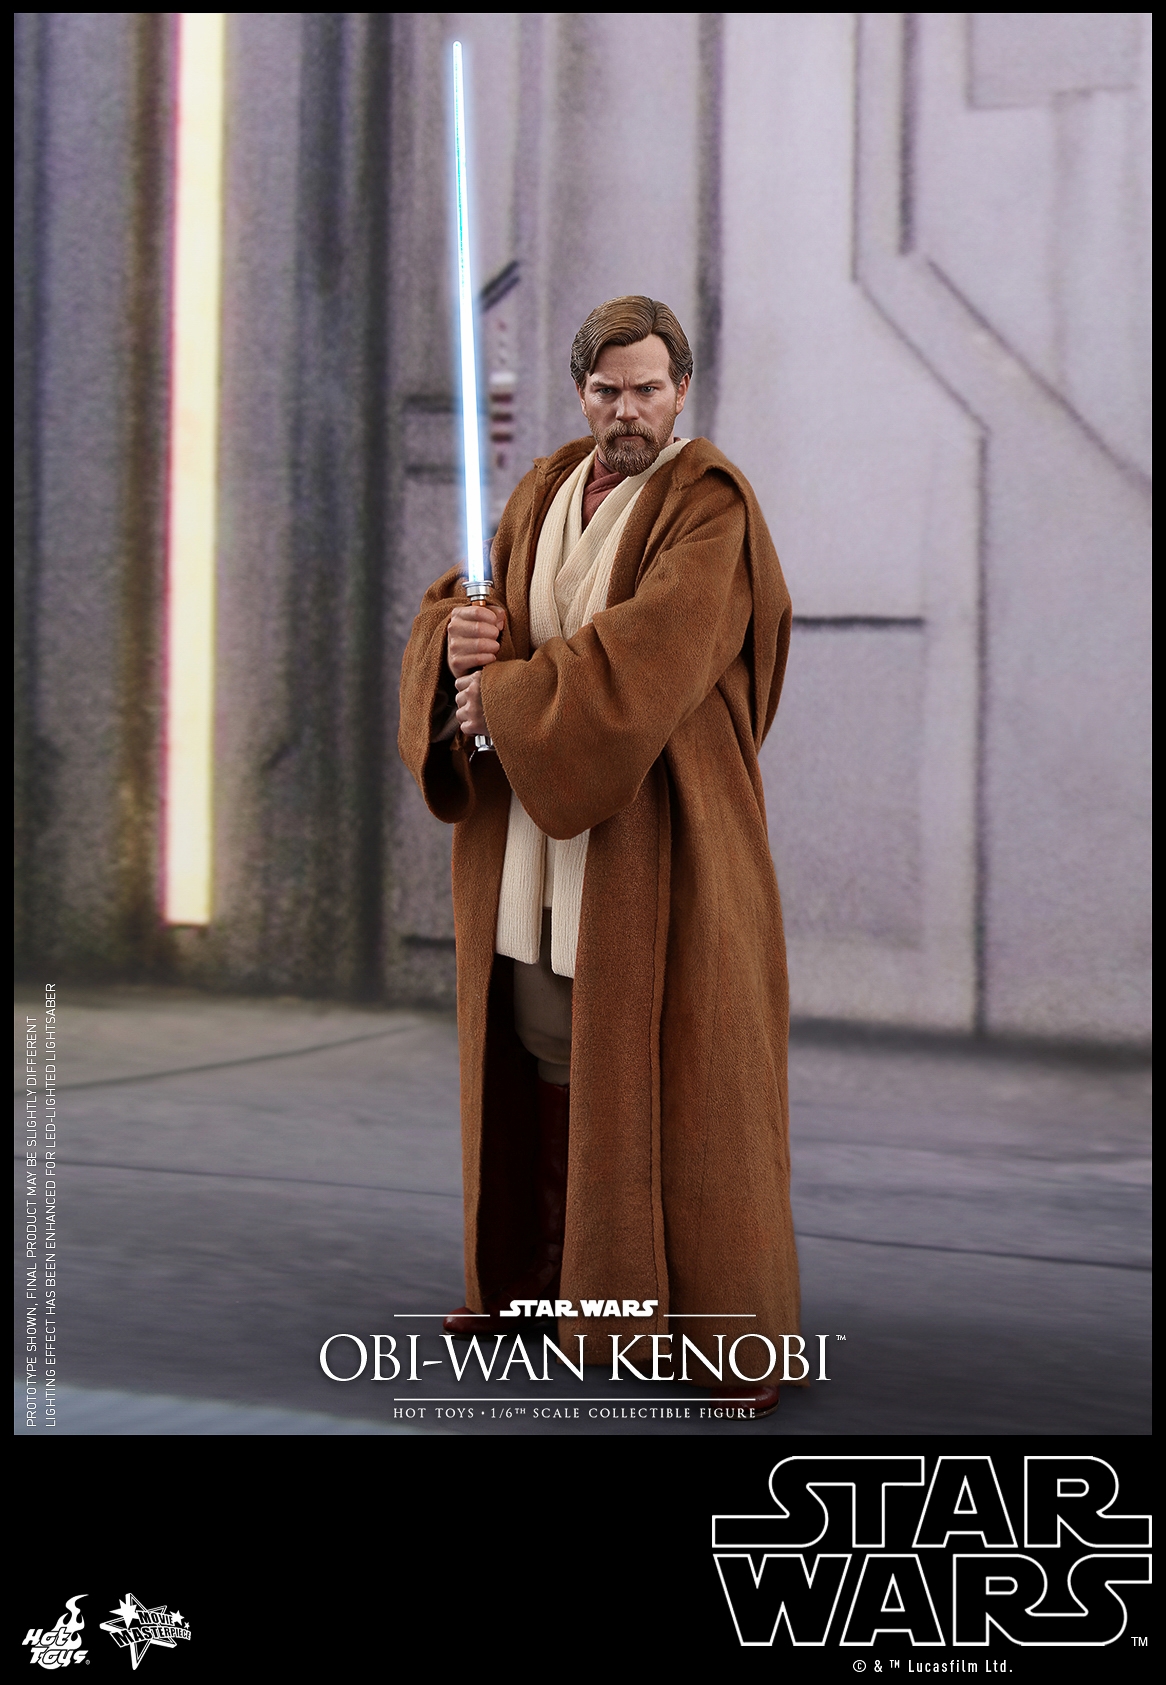 Hot-Toys-MMS477-Revenge-of-the-Sith-Obi-Wan-Kenobi-001.jpg